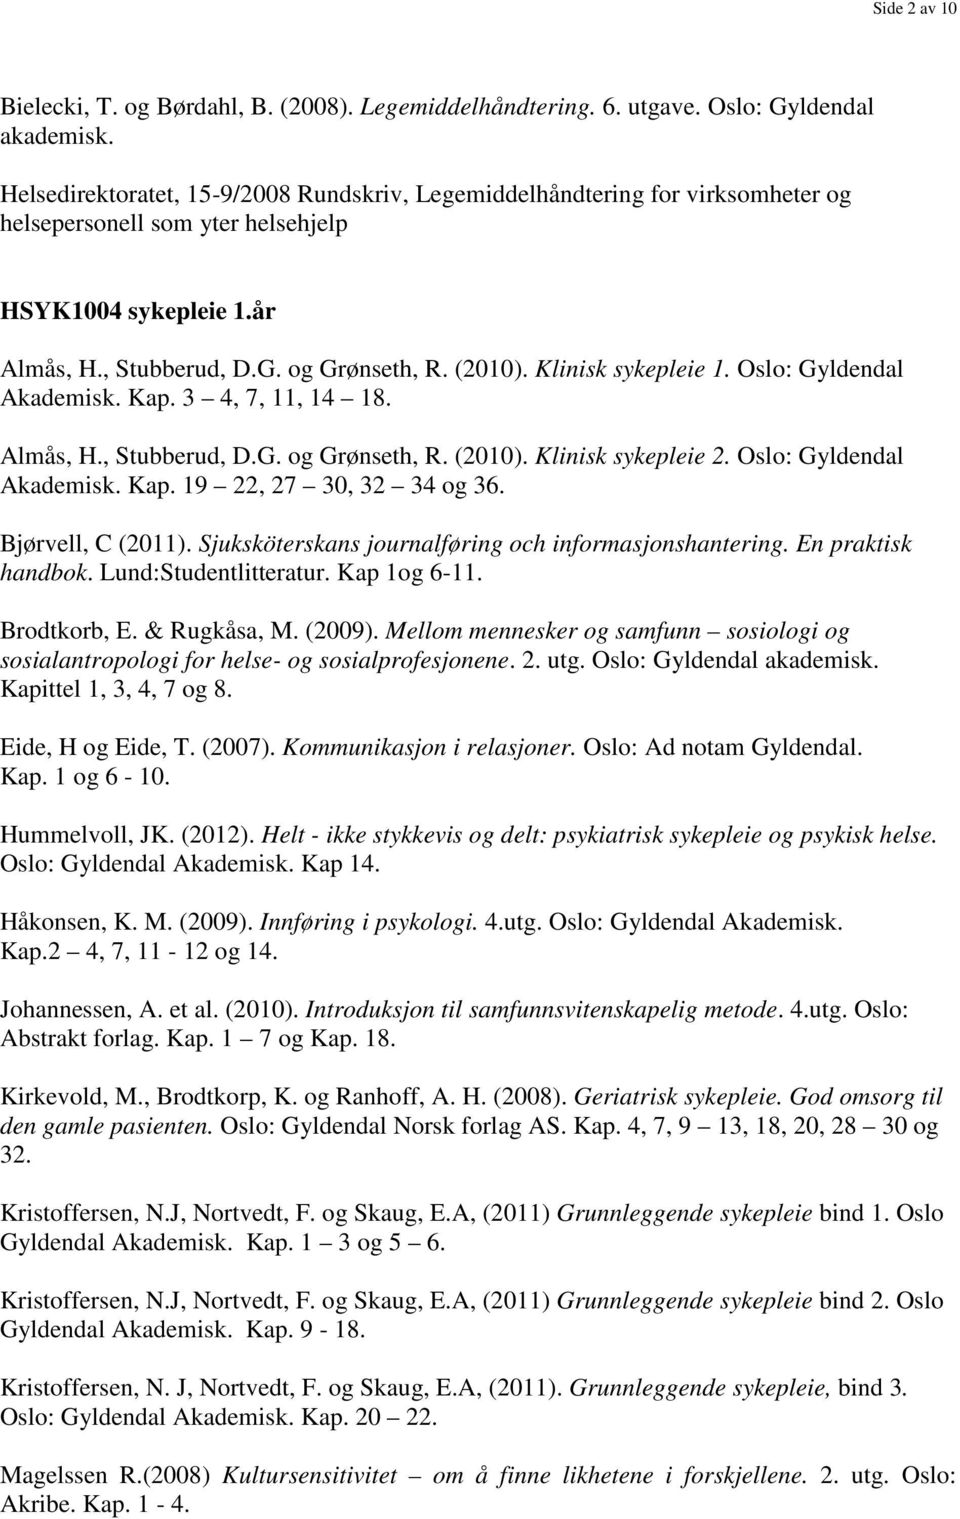 Klinisk sykepleie 1. Oslo: Gyldendal Akademisk. Kap. 3 4, 7, 11, 14 18. Almås, H., Stubberud, D.G. og Grønseth, R. (2010). Klinisk sykepleie 2. Oslo: Gyldendal Akademisk. Kap. 19 22, 27 30, 32 34 og 36.